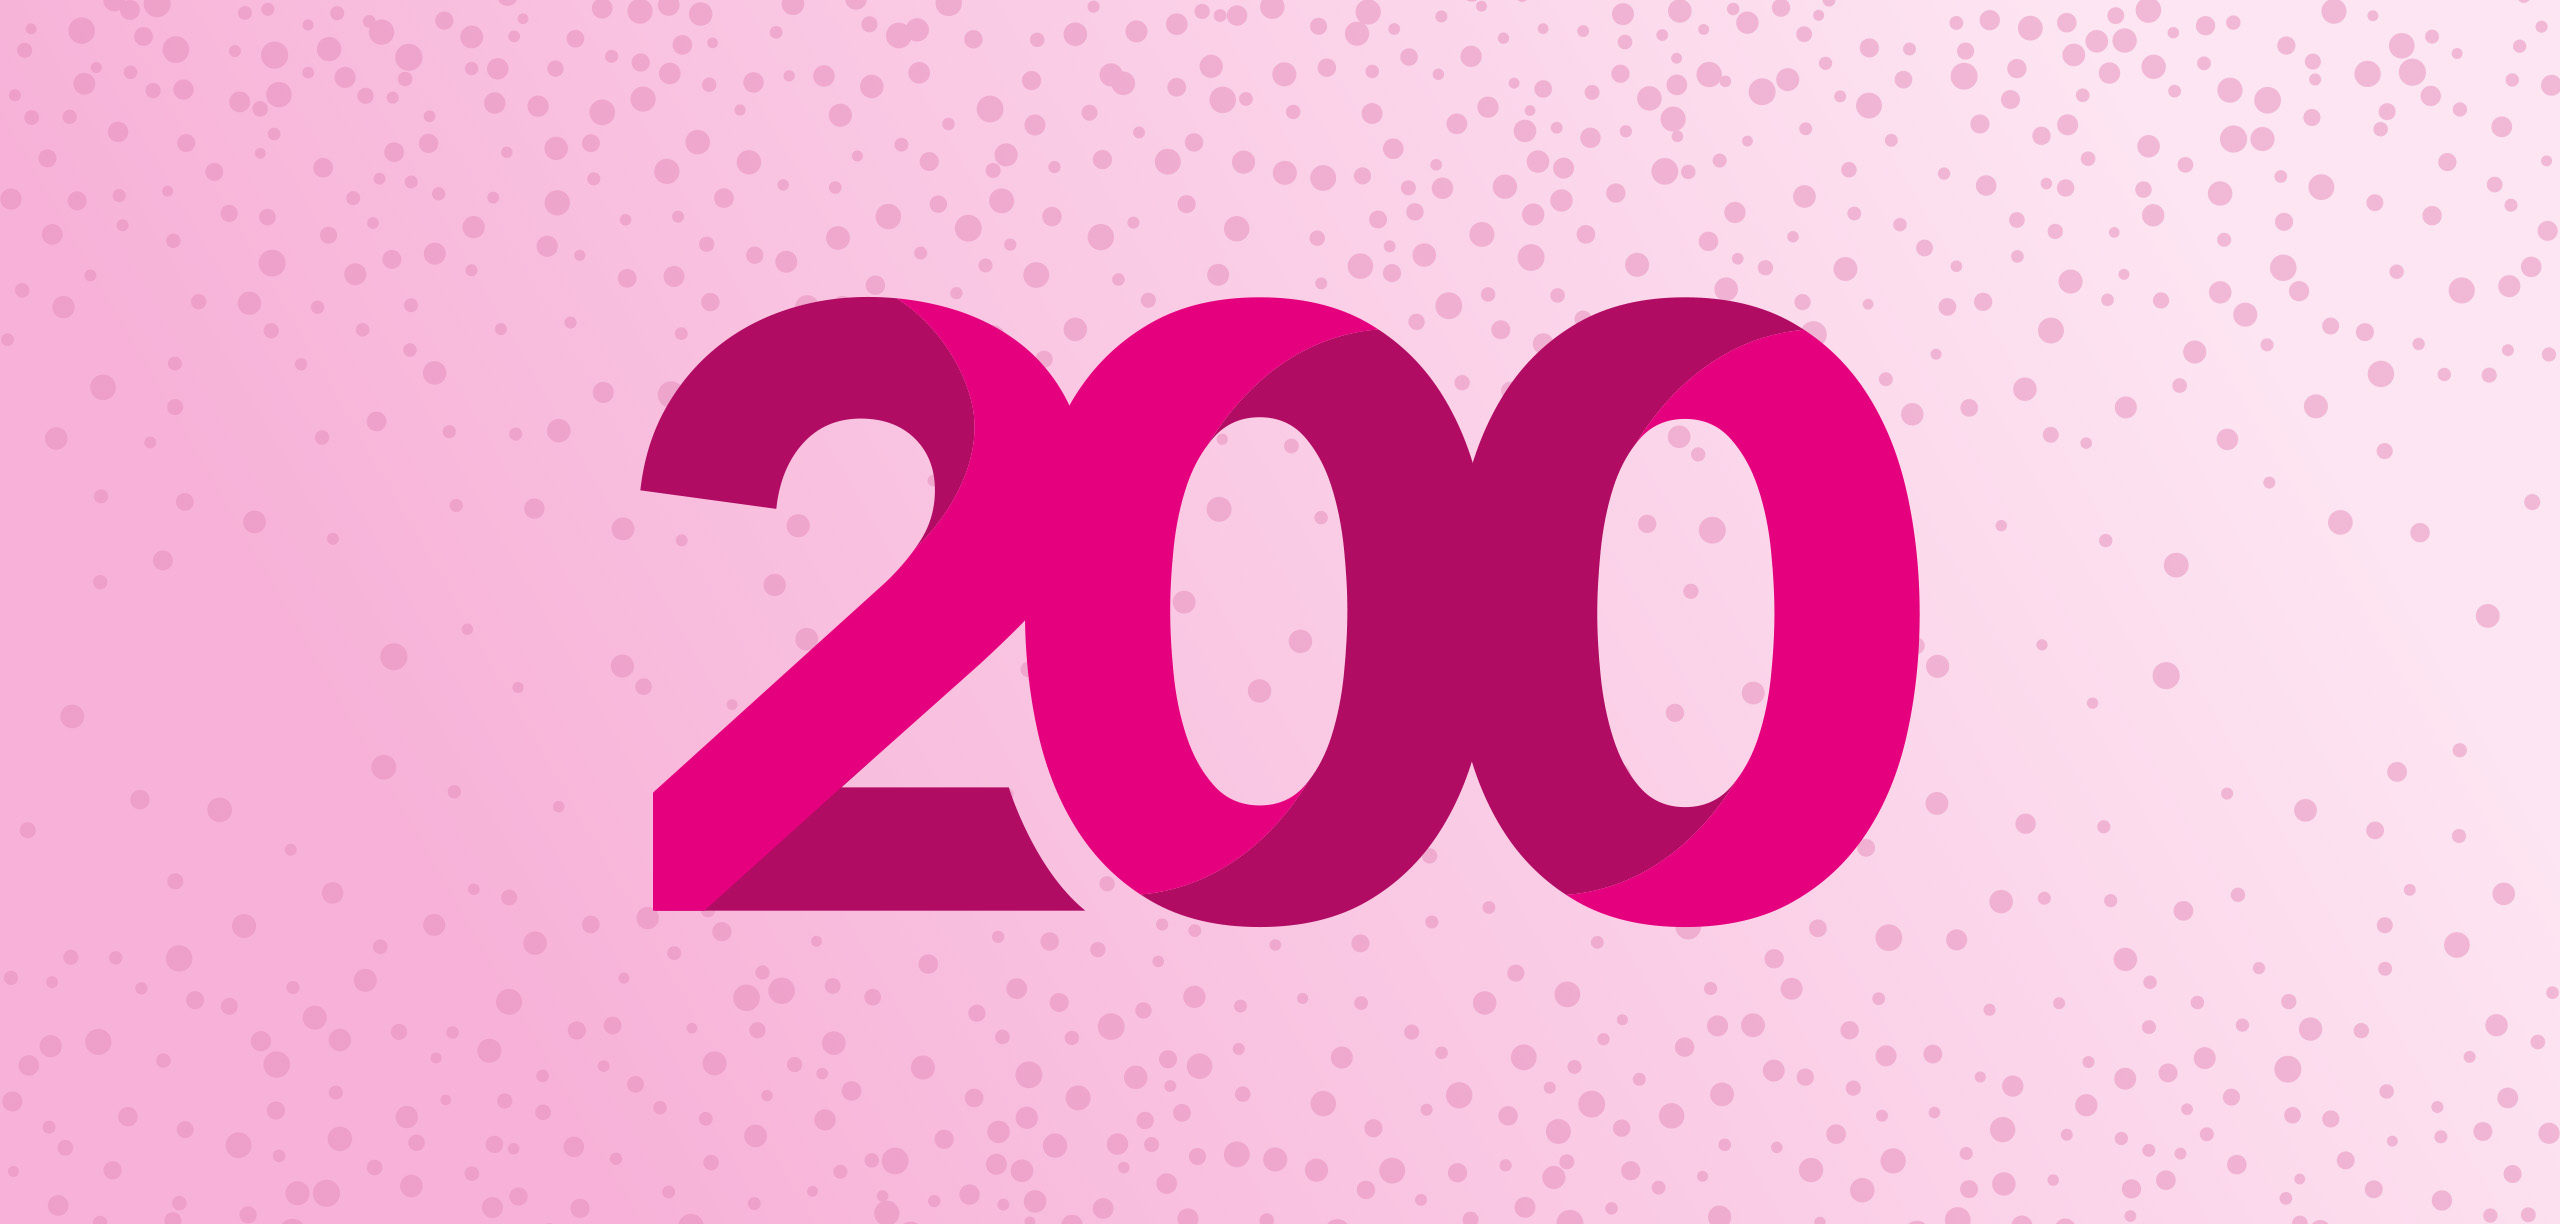 200 blog artikelen